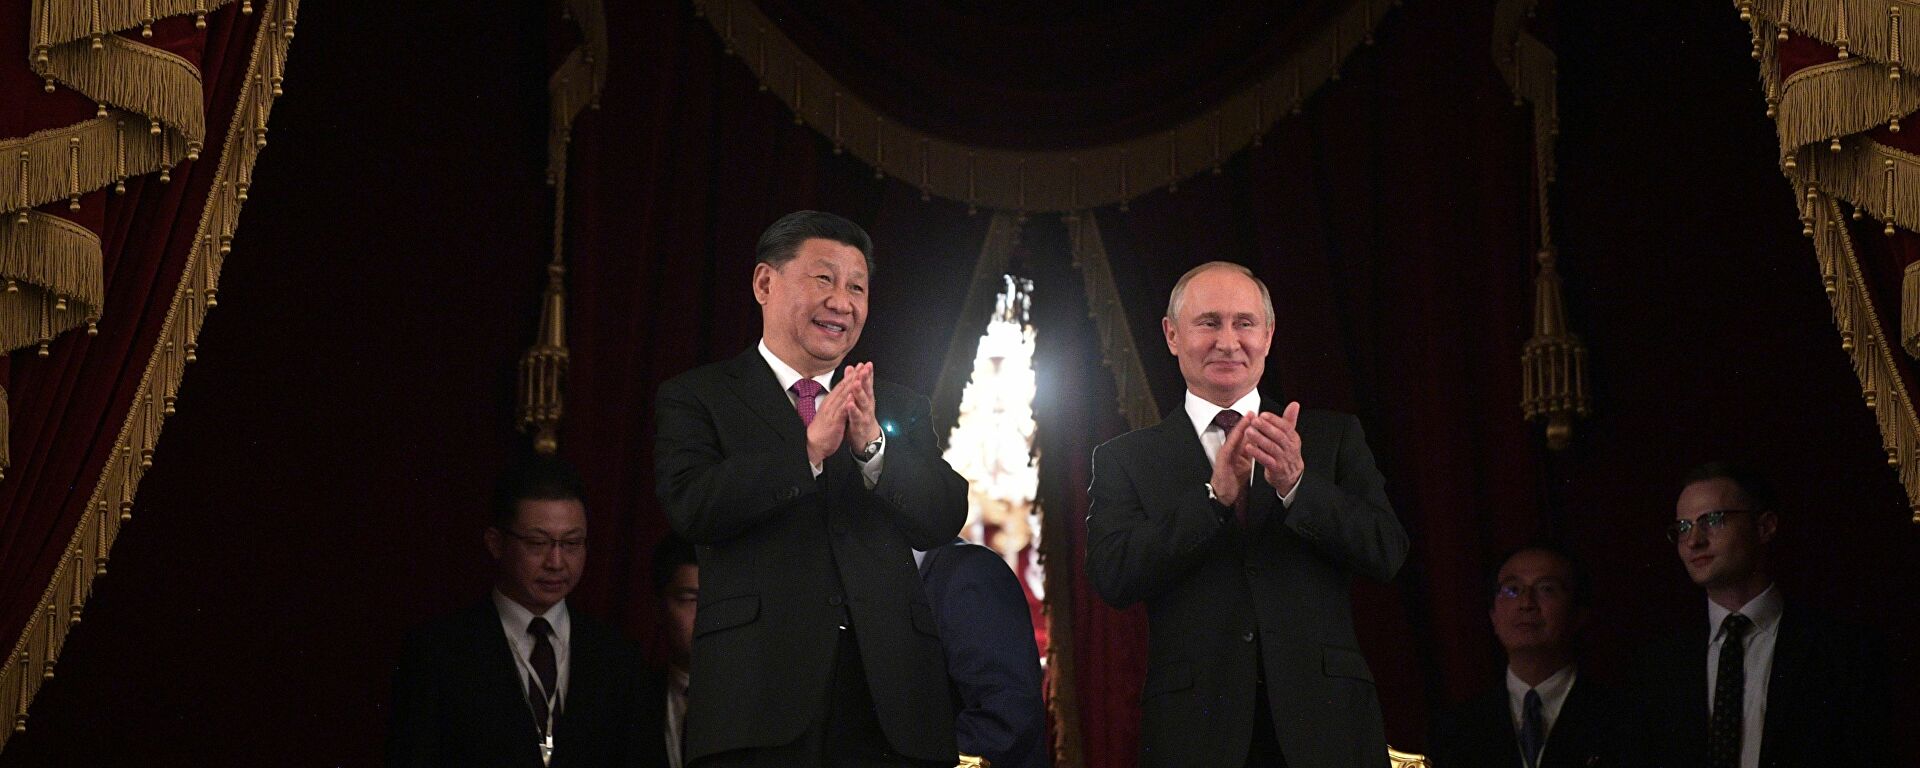 تقرير يكشف سلاح روسيا السري لتجاوز عقوبات الغرب و أنباء عن ثروة طائلة في الصين